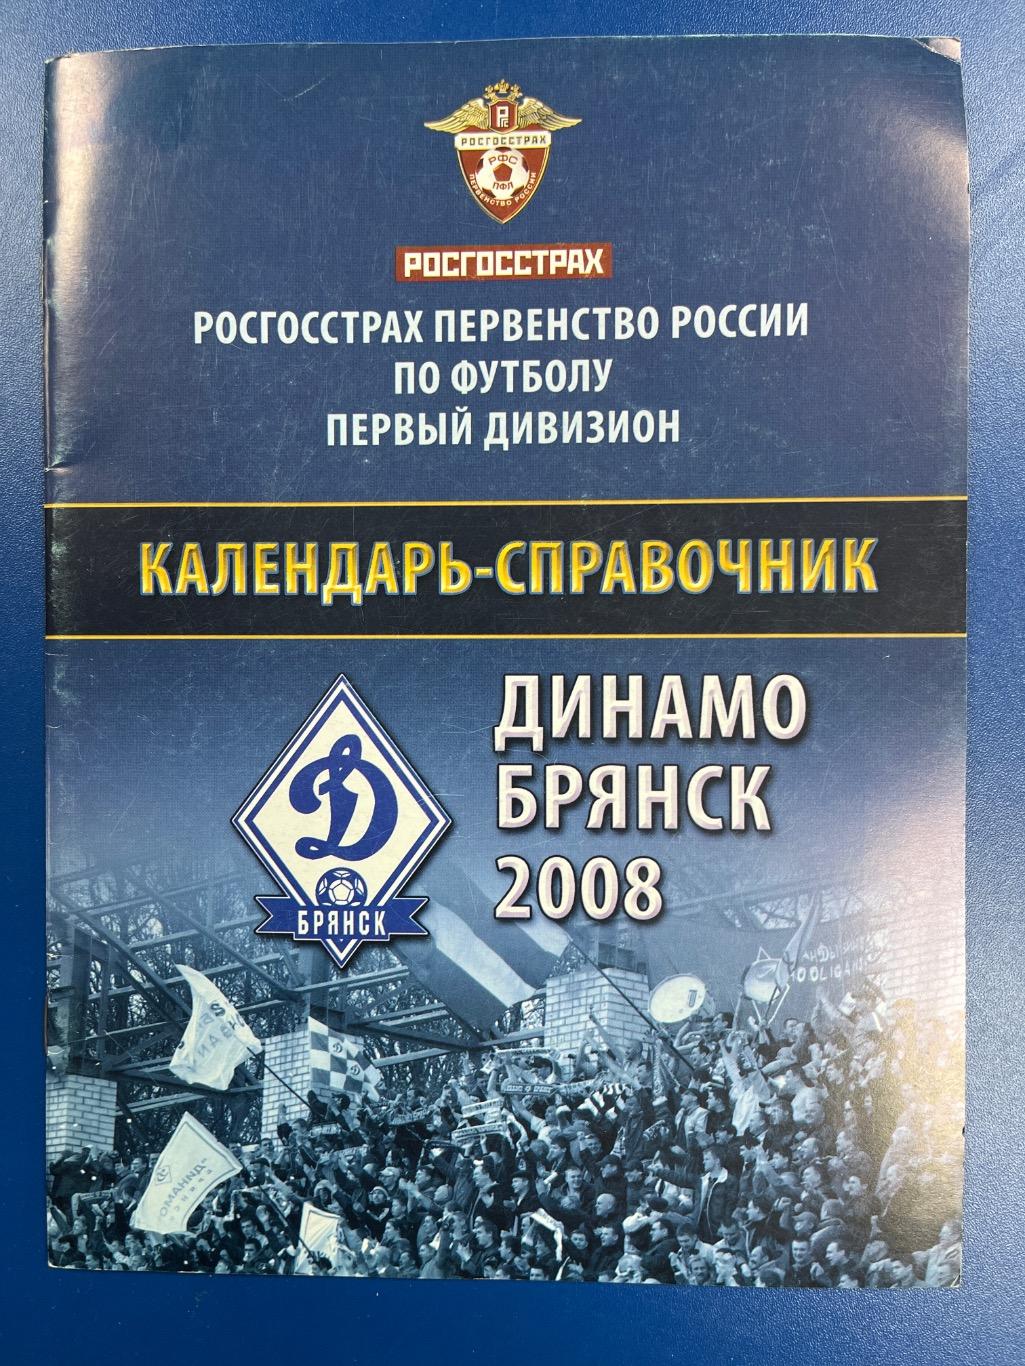 Календарь-справочник Динамо Брянск 2008